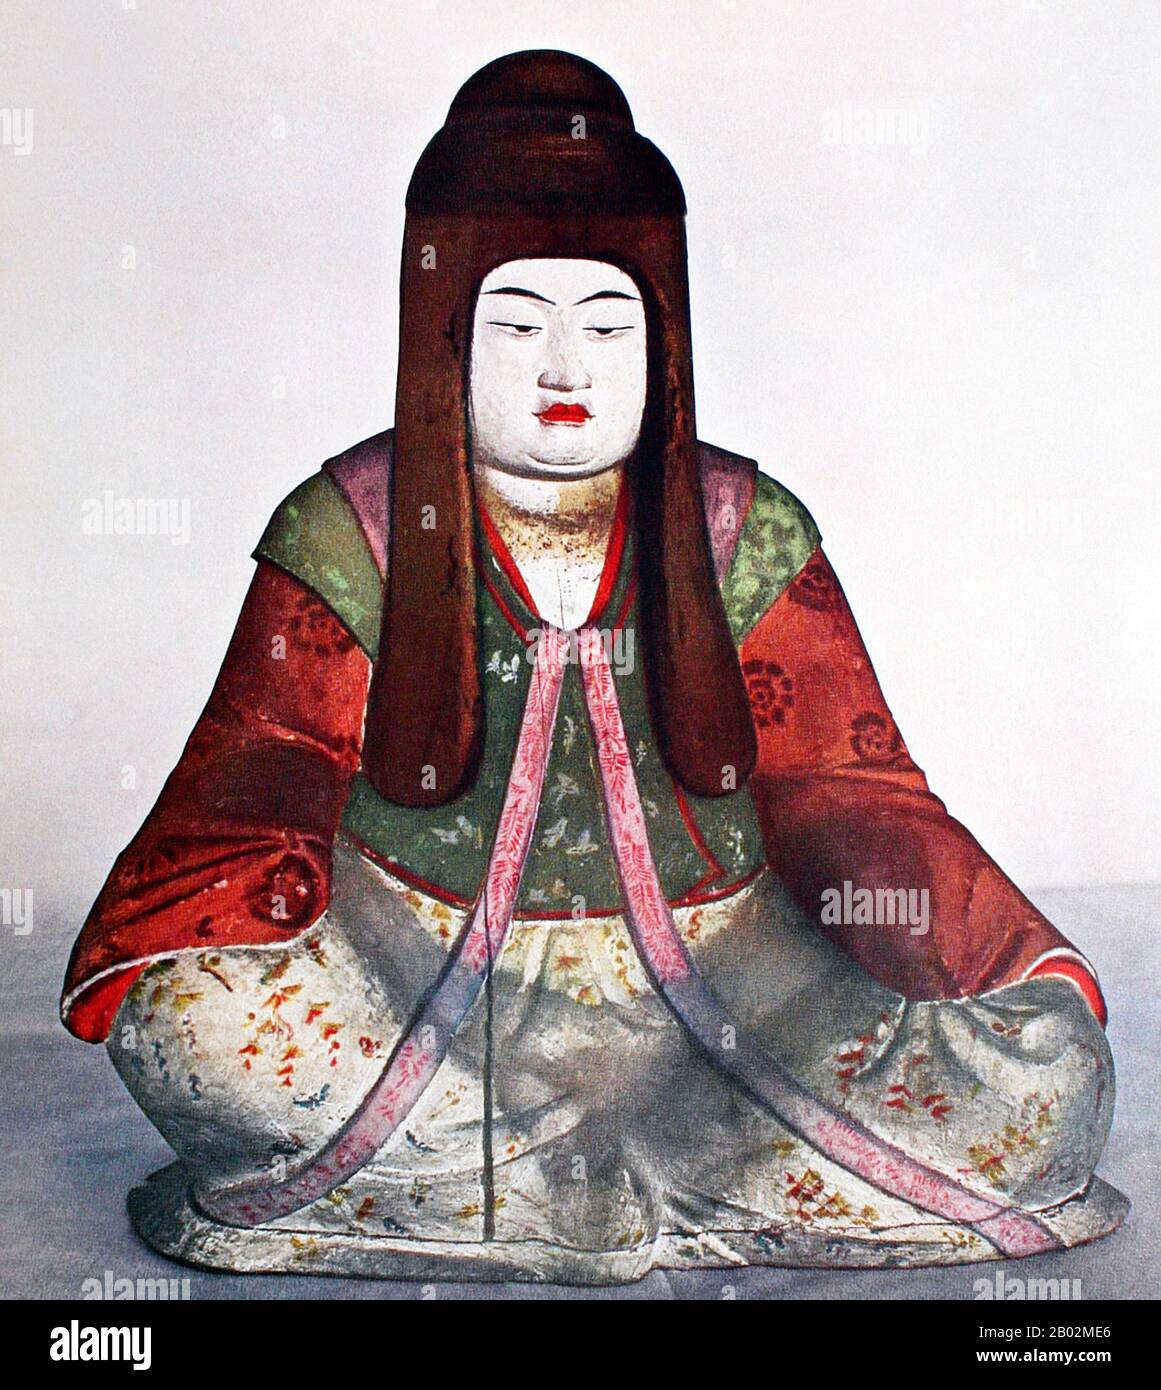 Empress Jingu fu consort all'imperatore Chuai (nozionalmente 192 - 200 CE), ha anche servito come reggente dal momento della morte del marito nel 209 fino a quando il suo figlio imperatore Ōjin accedeva al trono nel 269.Nessuna data ferma può essere assegnata alla vita o al regno di questa figura storica. Jingū è considerata dagli storici come una figura 'leggendaria' a causa della scarsità di informazioni su di lei. La leggenda narra che guidò un esercito in un'invasione della Corea e tornò vittorioso in Giappone dopo tre anni. Tuttavia, questa teoria è ampiamente respinta anche in Giappone, in quanto non vi è alcuna prova di regola giapponese in alcuna parte di Kore Foto Stock